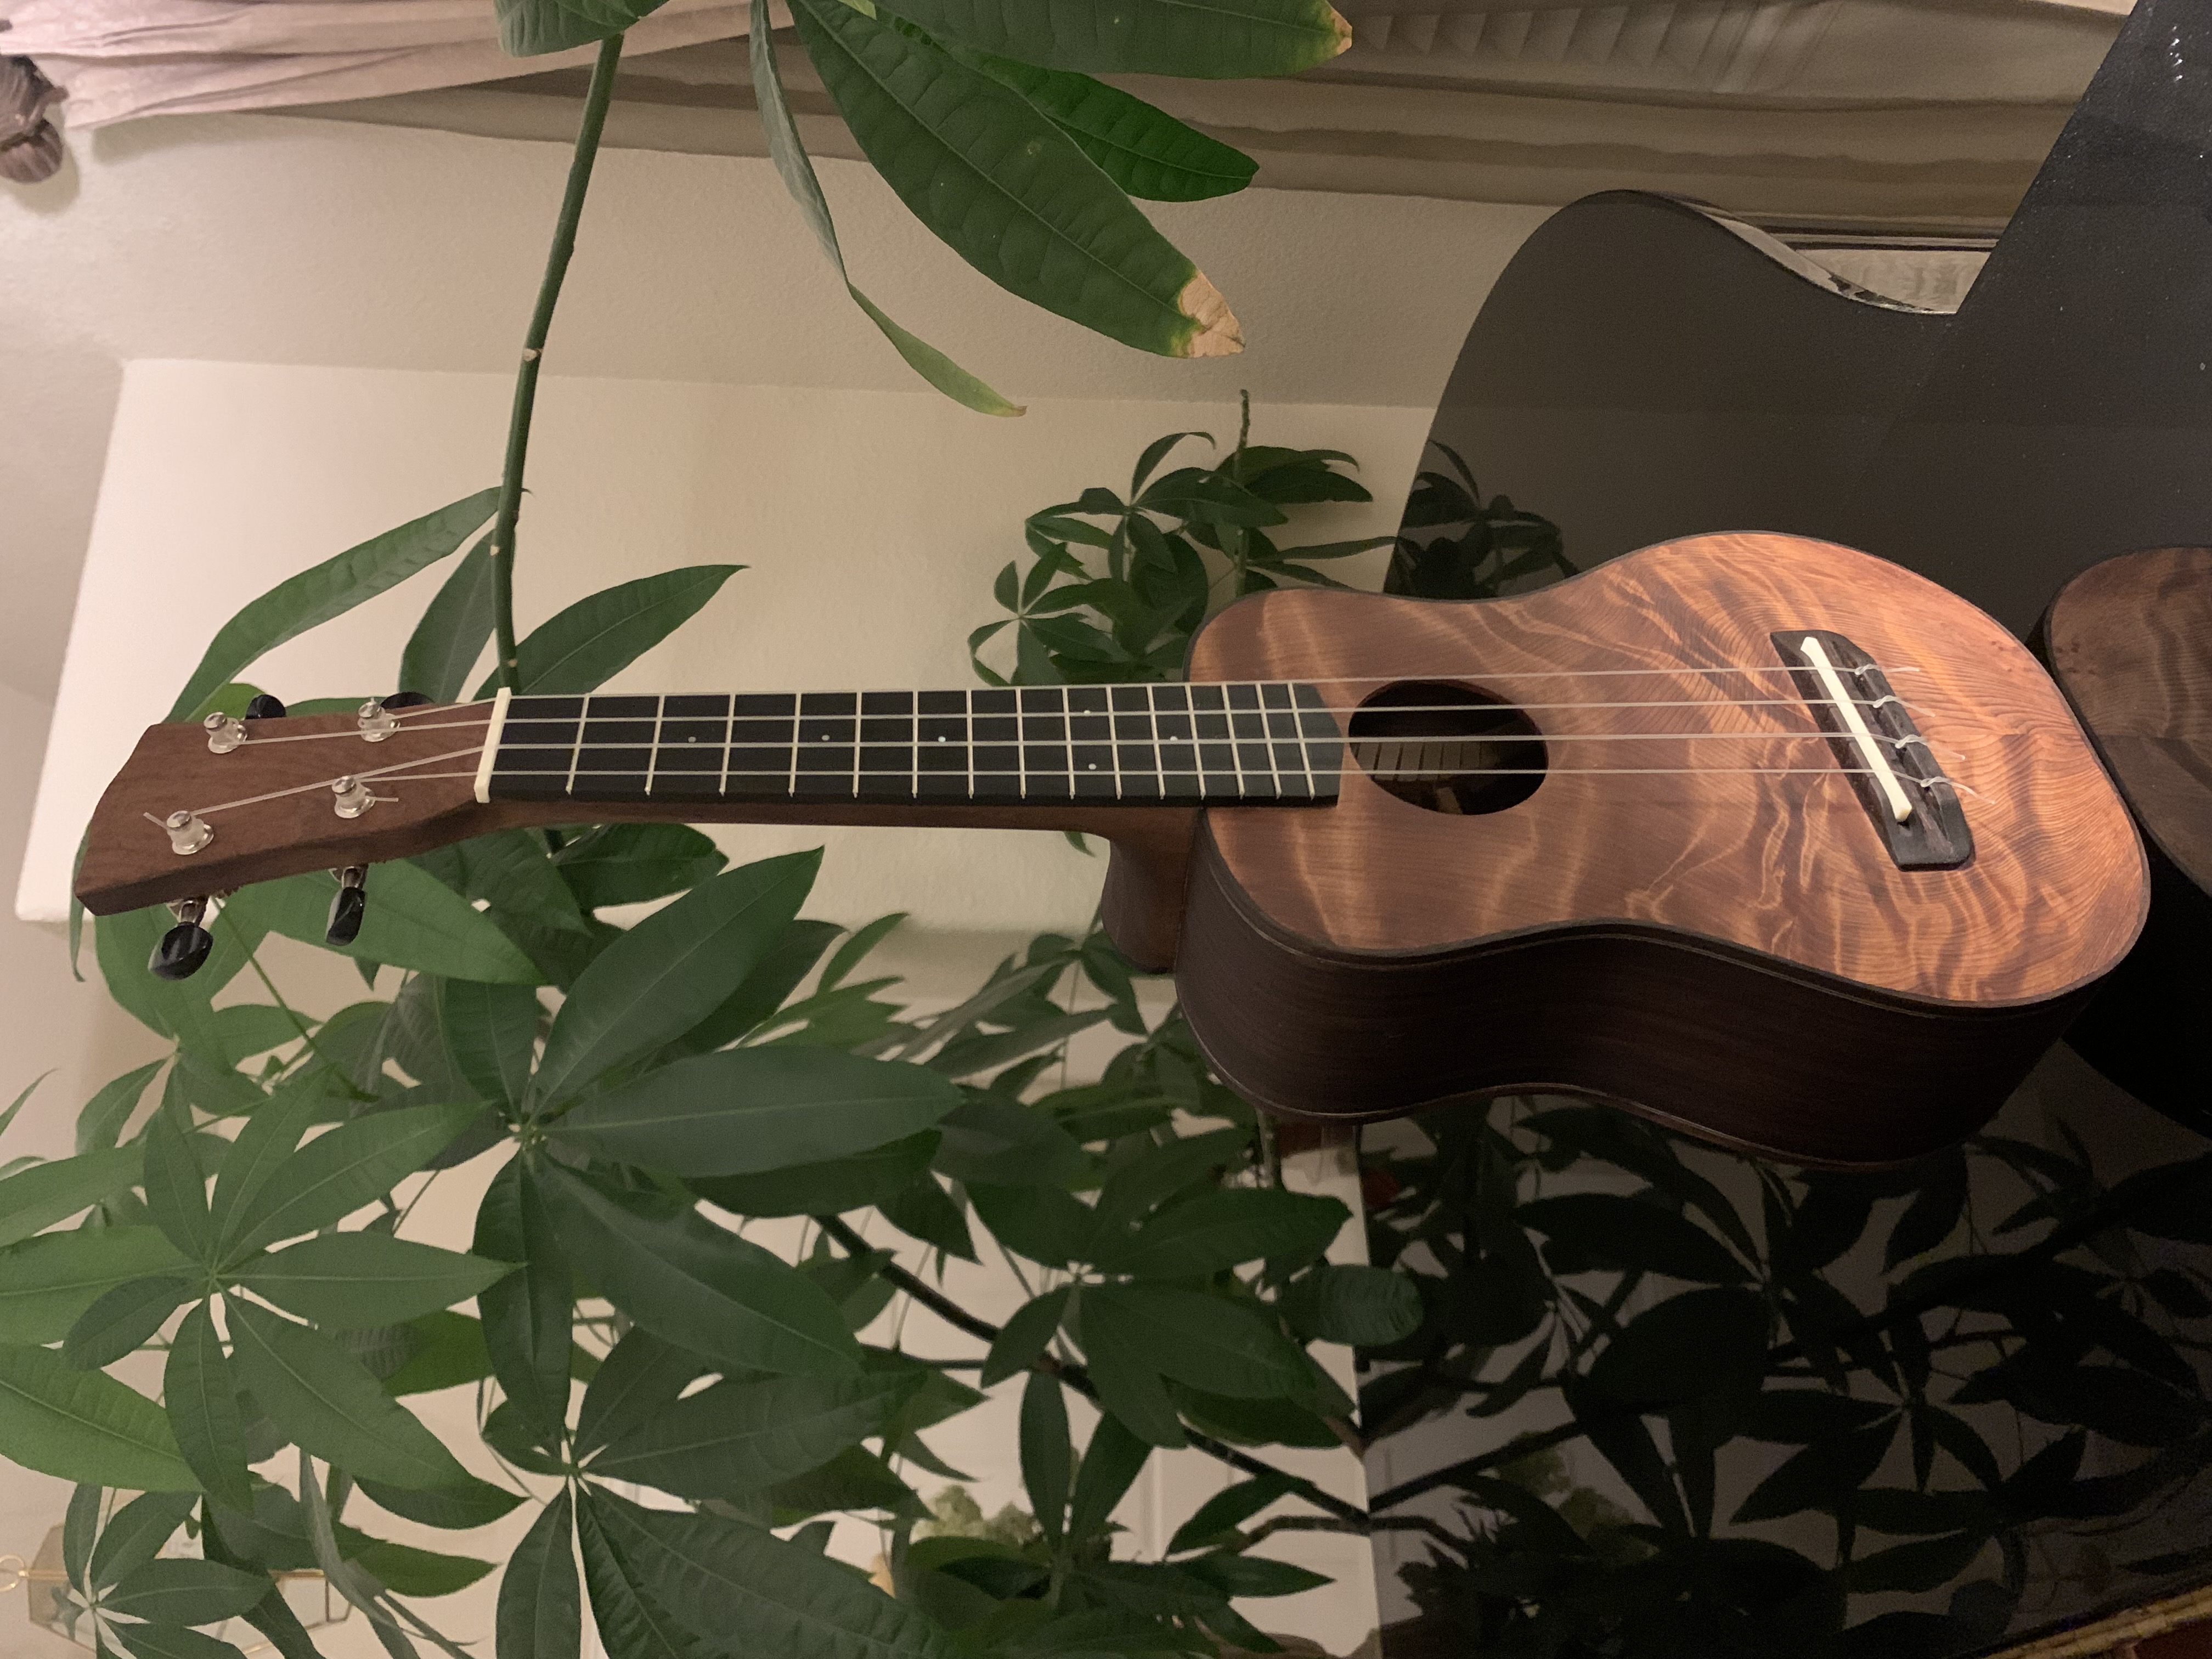 completed ukulele